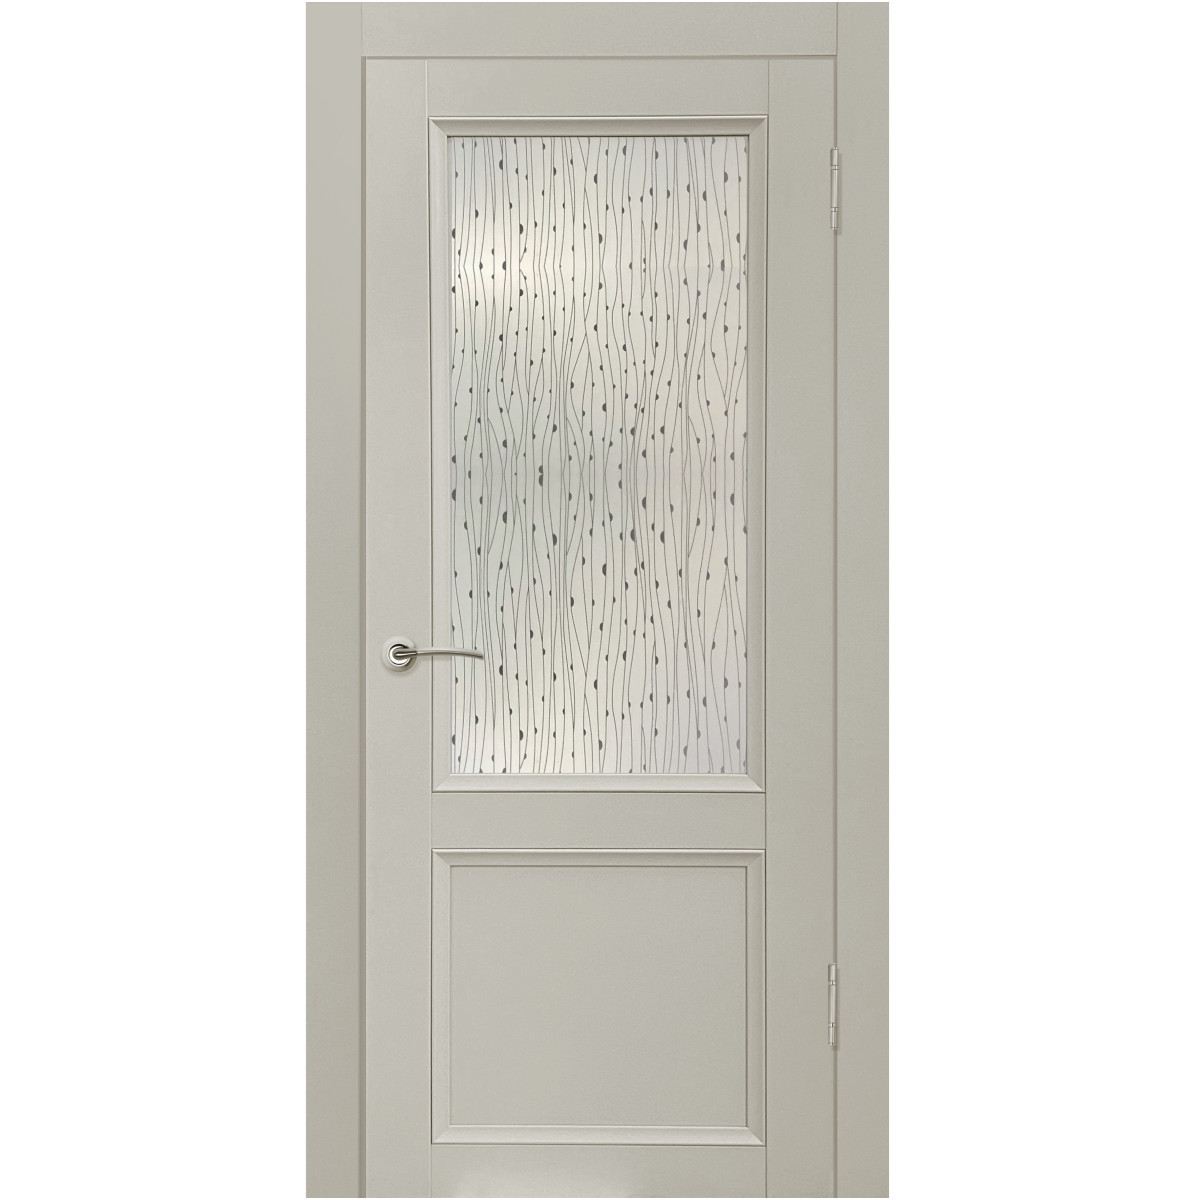 Дверь межкомнатная остеклённая с замком и петлями в комплекте Рондо 70x200 см Hardflex цвет серый жемчуг